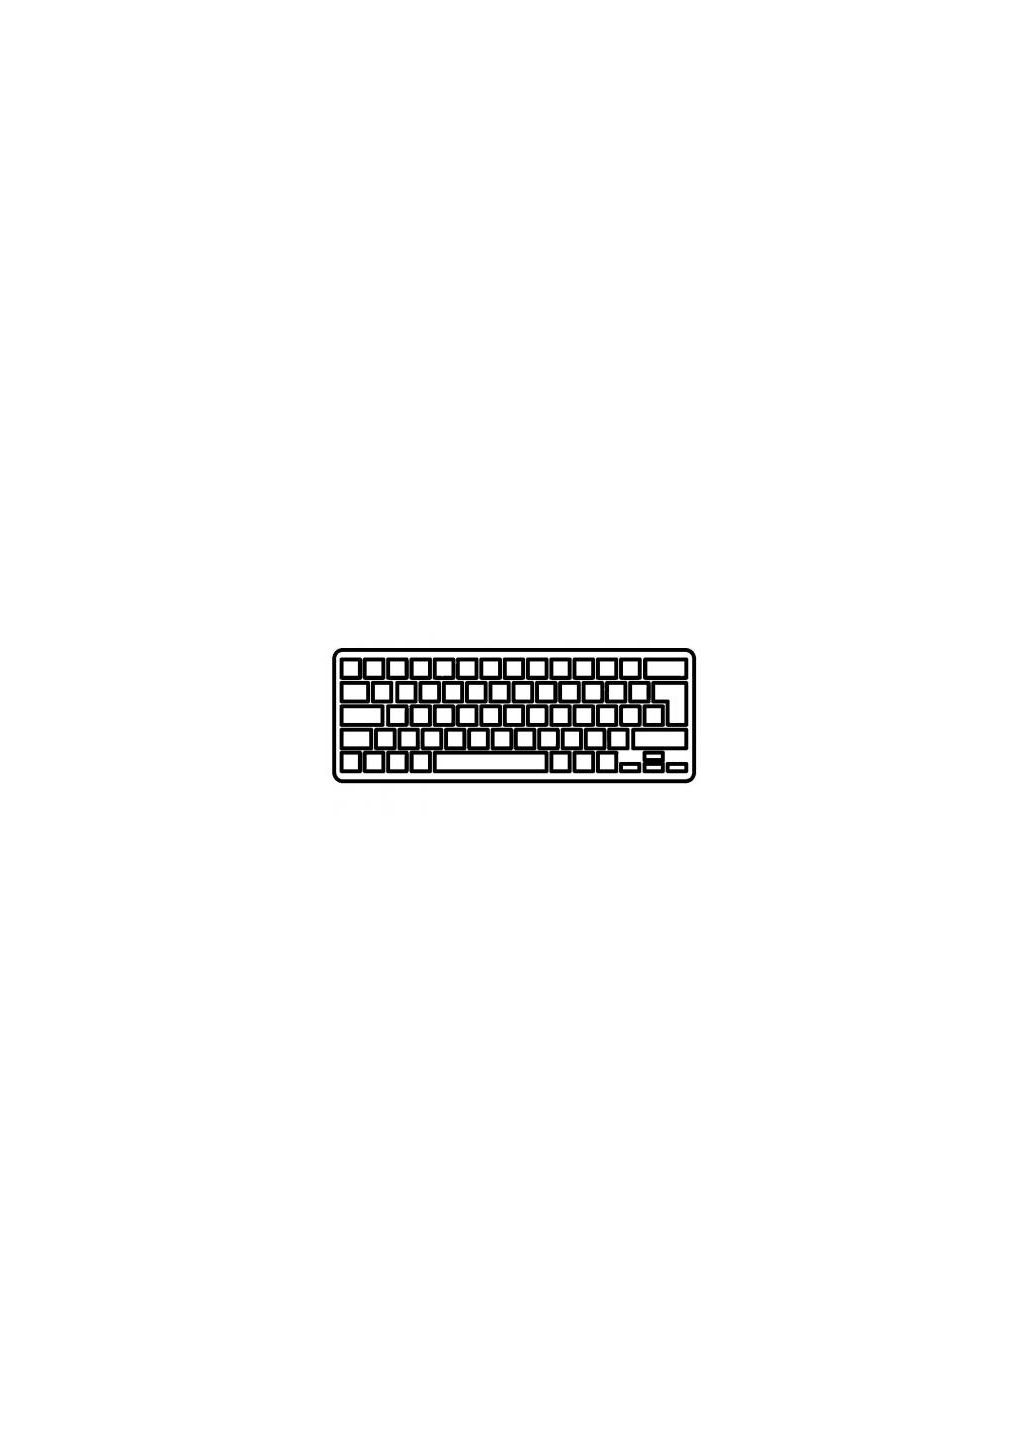 Клавиатура ноутбука Inspiron 17R3721/17R-5721 Series черная с черной рамкой RU (A43785) Dell inspiron 17r-3721/17r-5721 series черная с черной (276707119)